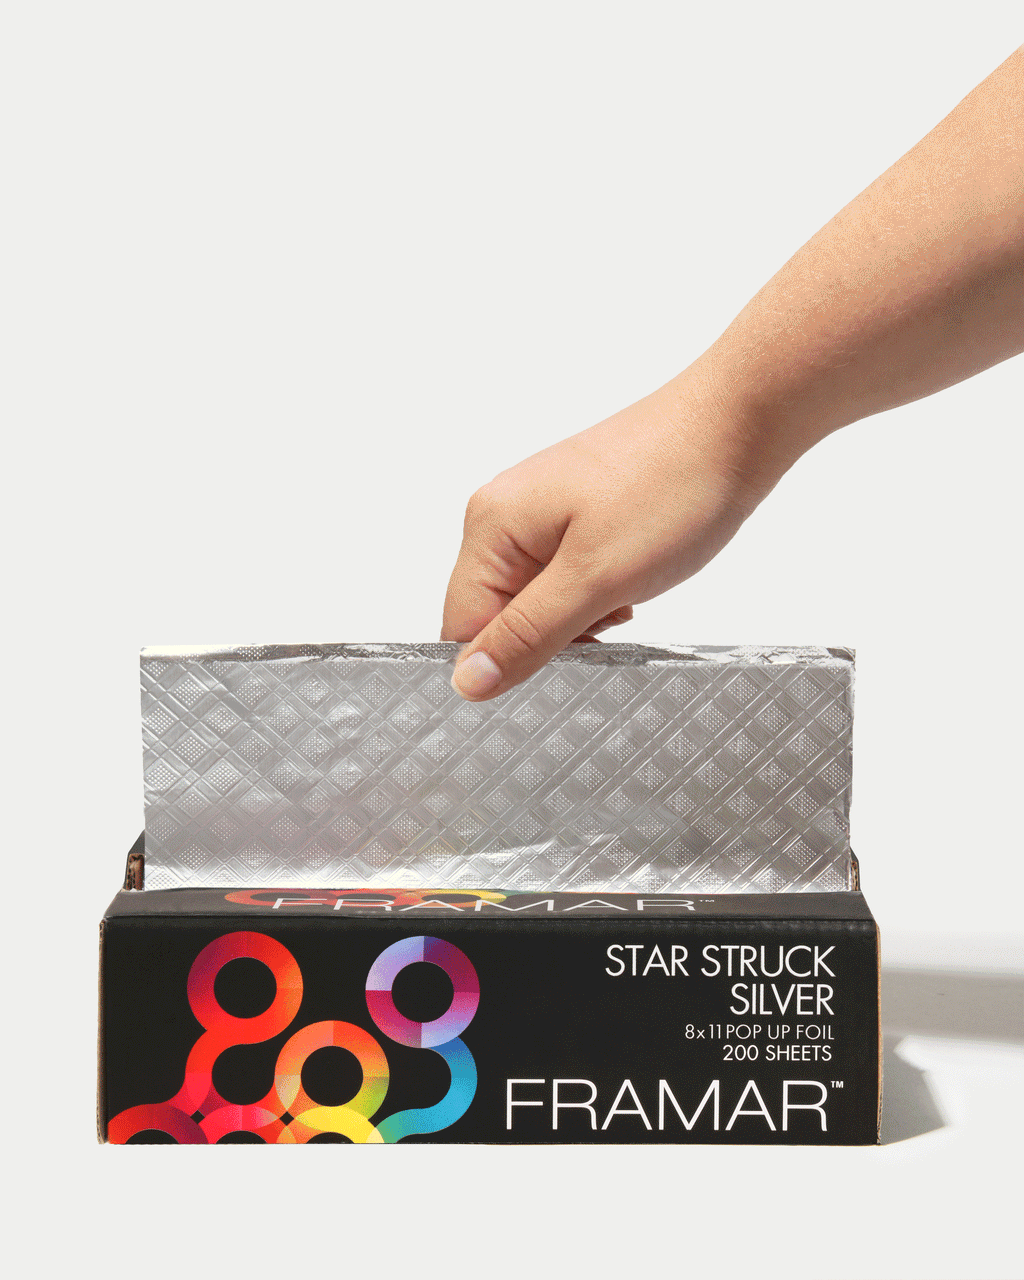 Framar Star Struck Silver Pop Up Hair Foil Aluminum 5 x 11 Foil